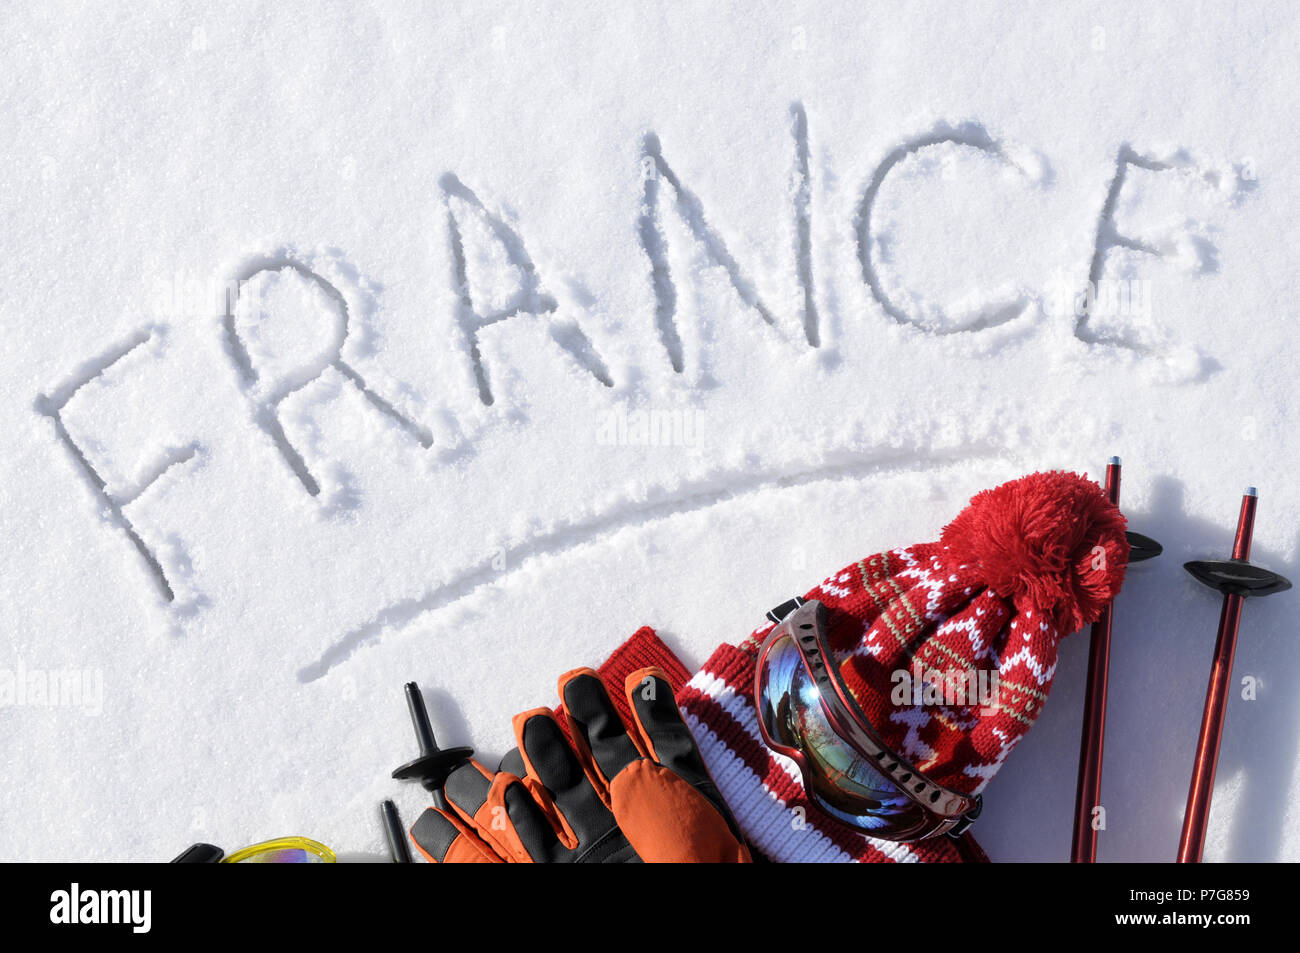 Das Wort Frankreich im Schnee mit Ski Stöcke, Schutzbrille und Hüte geschrieben. Stockfoto